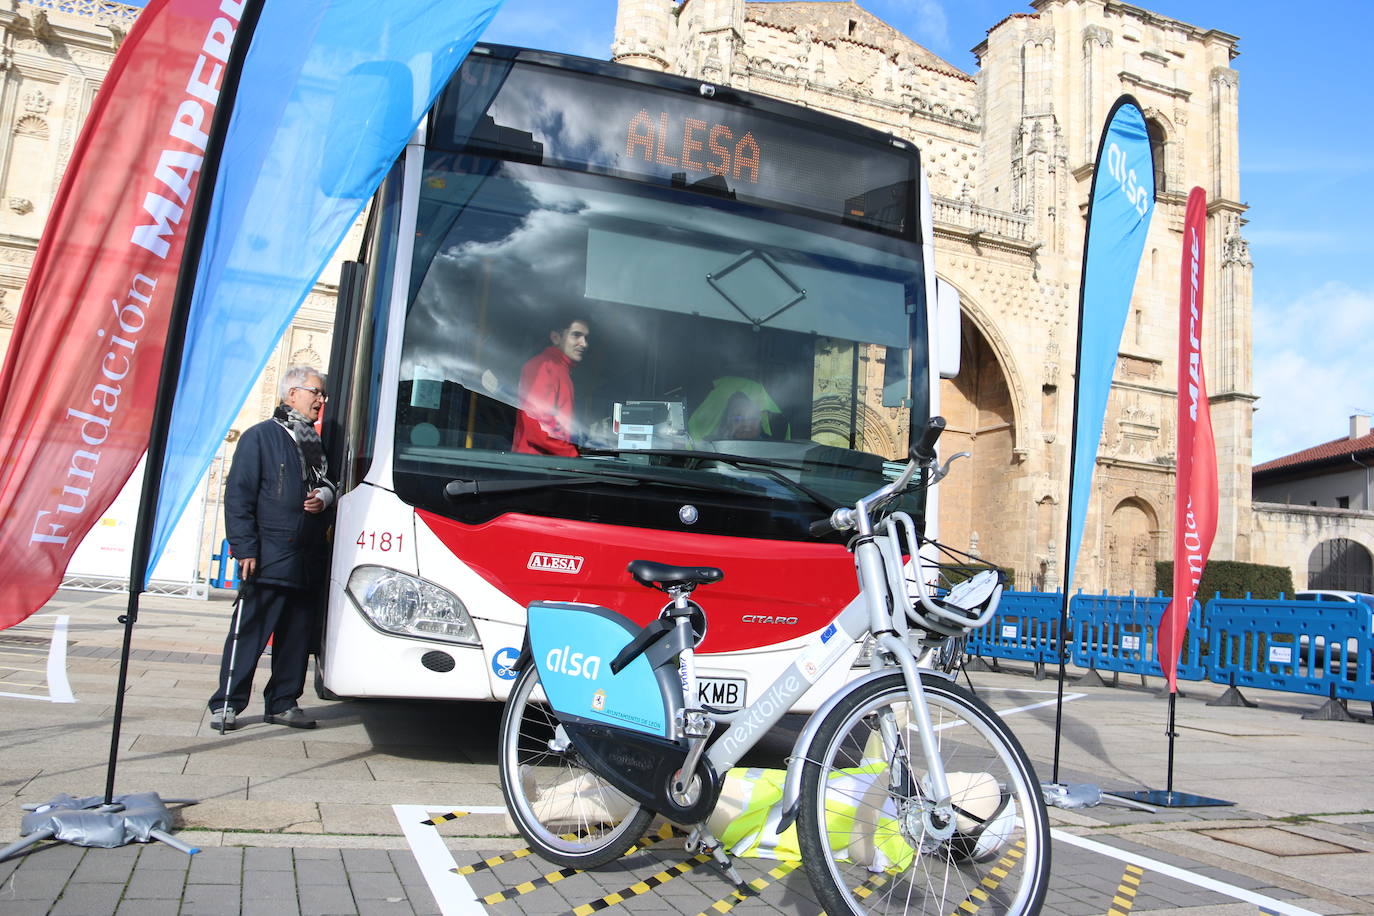 La DGT, Fundación Mapfre y Alesa organizan una campaña de concienciación sobre la importancia de la seguridad vial en la ciudad | Unos 150 escolares del Camino del Norte y Quevedo descubren la importancia de circular, tanto peatones como ciclistas y conductores, con responsabilidad.